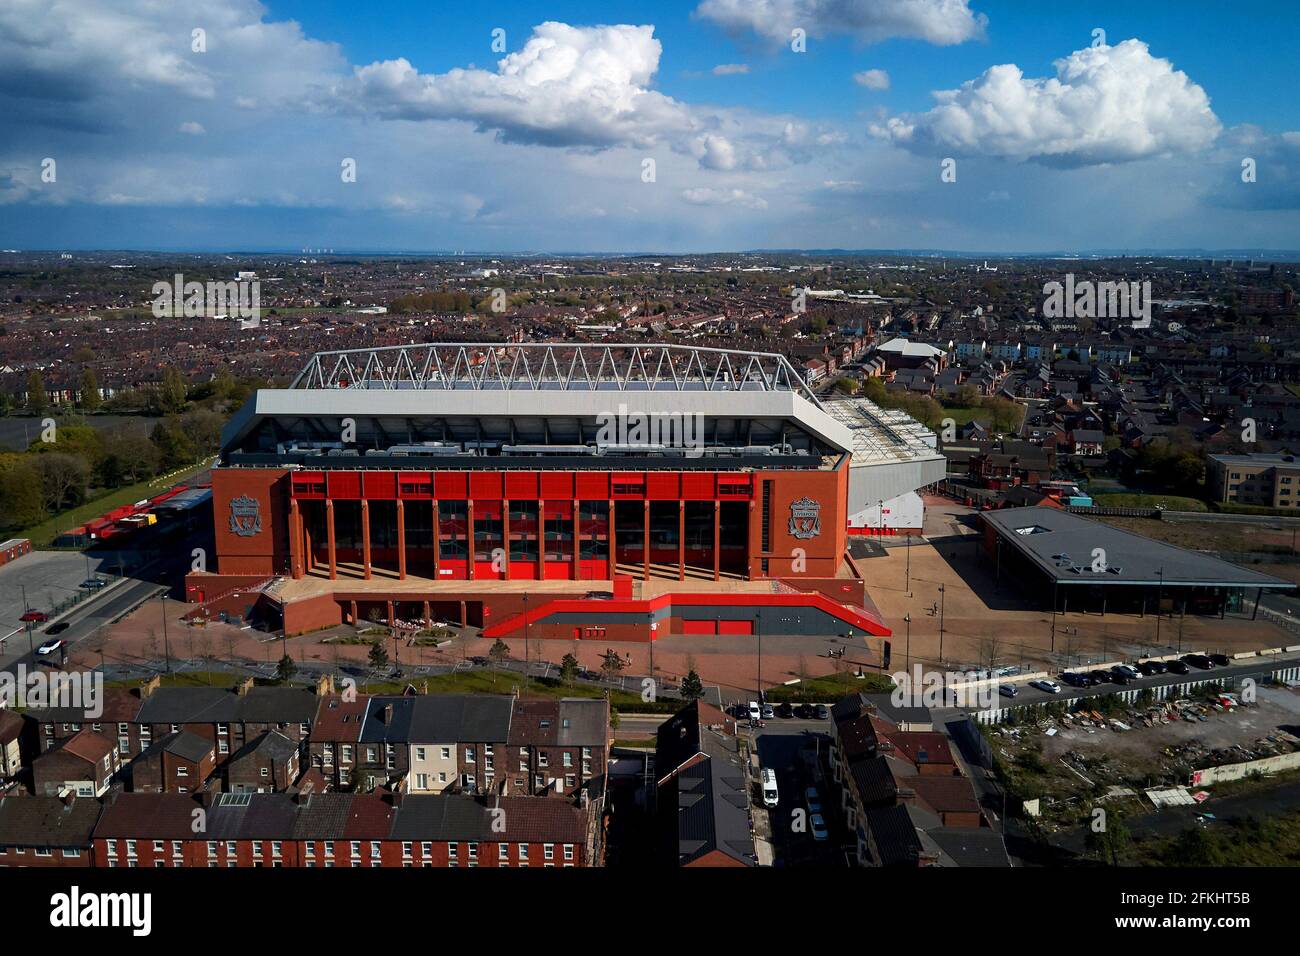 Vue aérienne d'Anfield montrant le stade dans son cadre urbain entouré de maisons résidentielles Banque D'Images